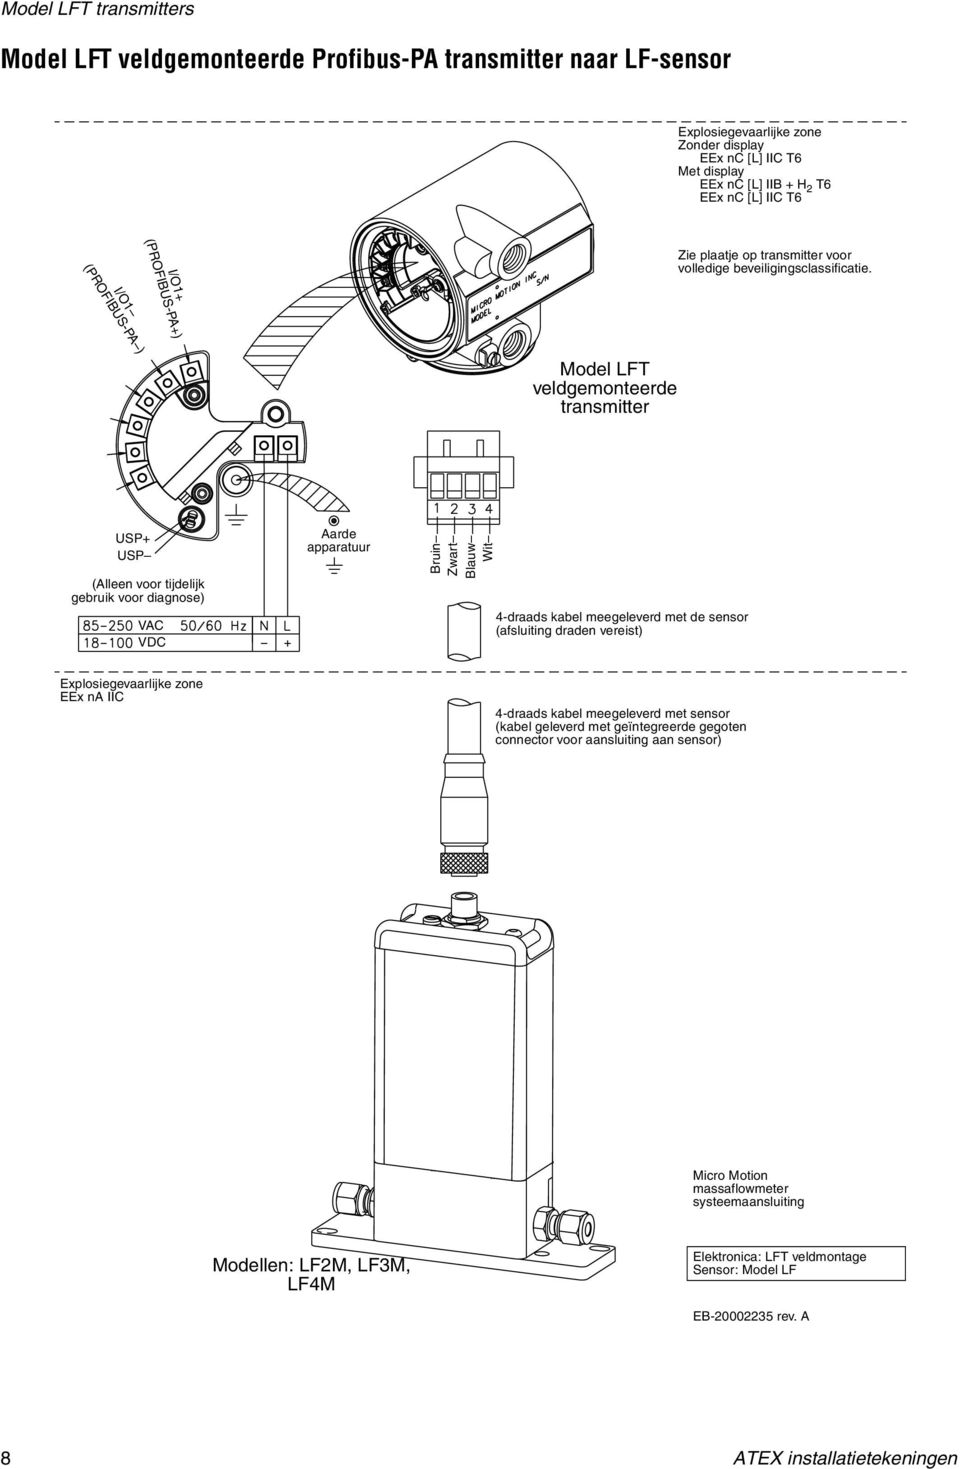 Model LFT veldgemonteerde transmitter USP+ USP (Alleen voor tijdelijk gebruik voor diagnose) VAC VDC Aarde apparatuur Bruin Zwart Blauw 4-draads meegeleverd met de sensor (afsluiting draden